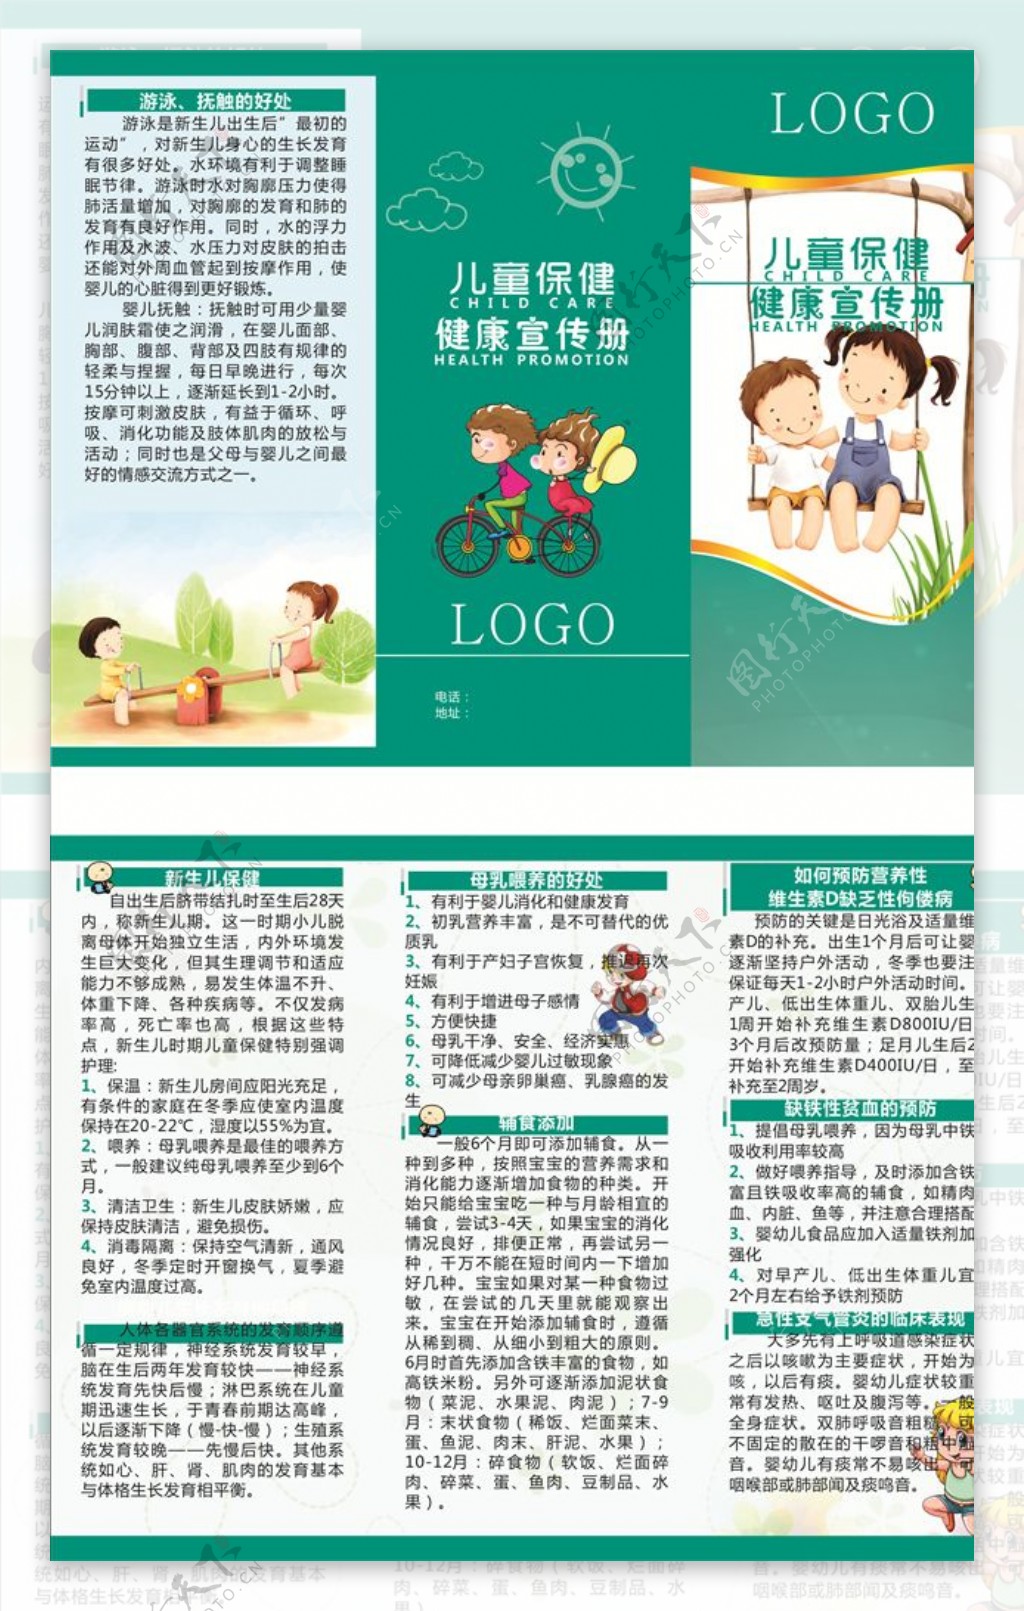 三折页儿童保健健康宣传册未转曲